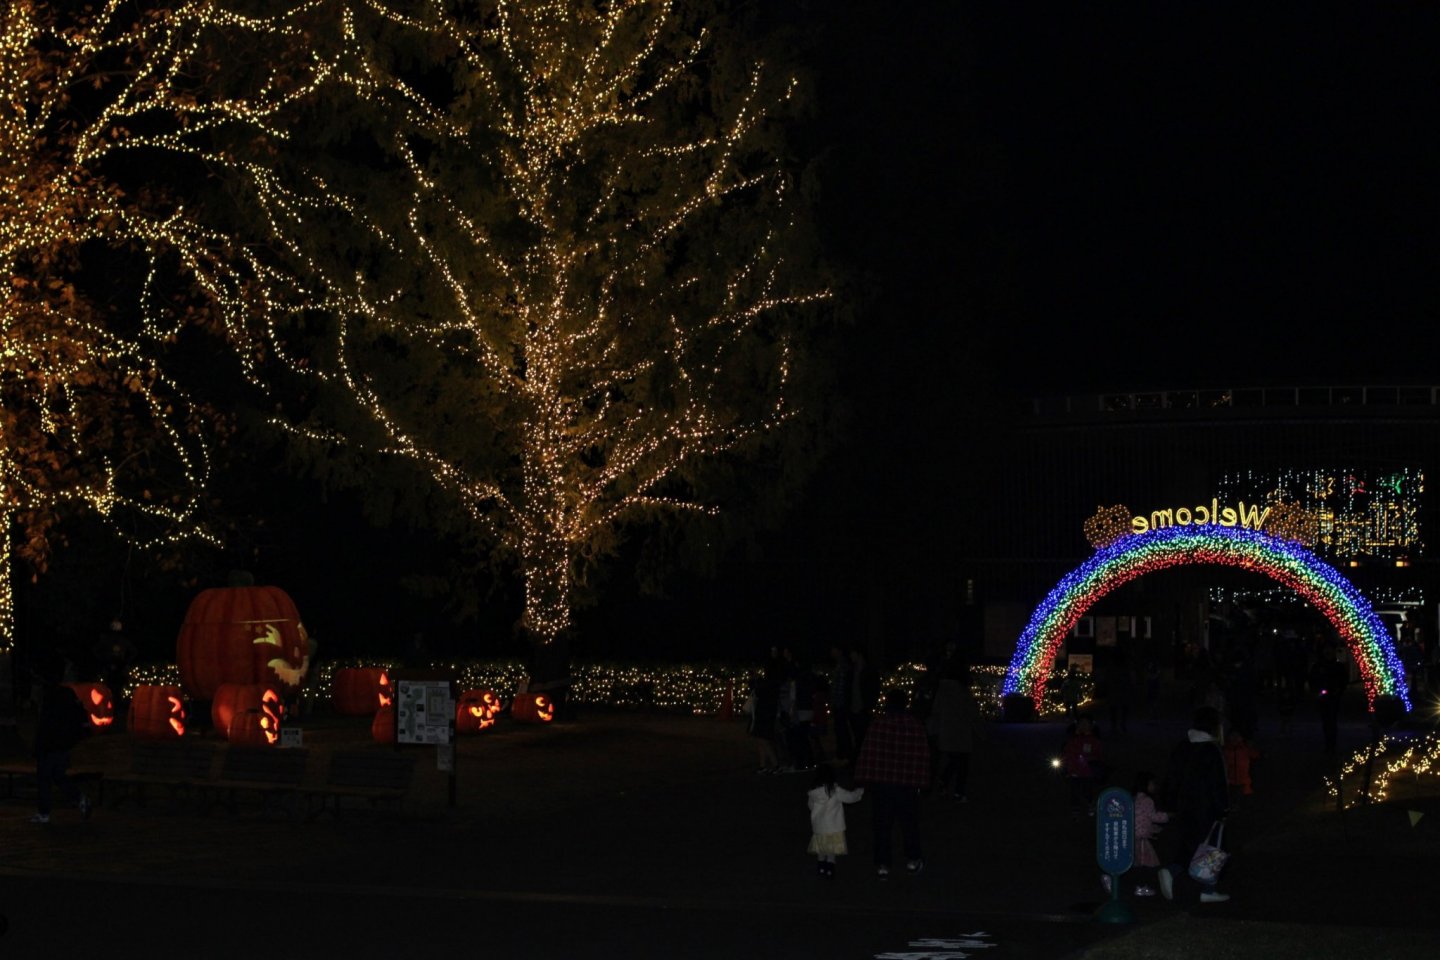 Halloween illumination in Shinrin Park